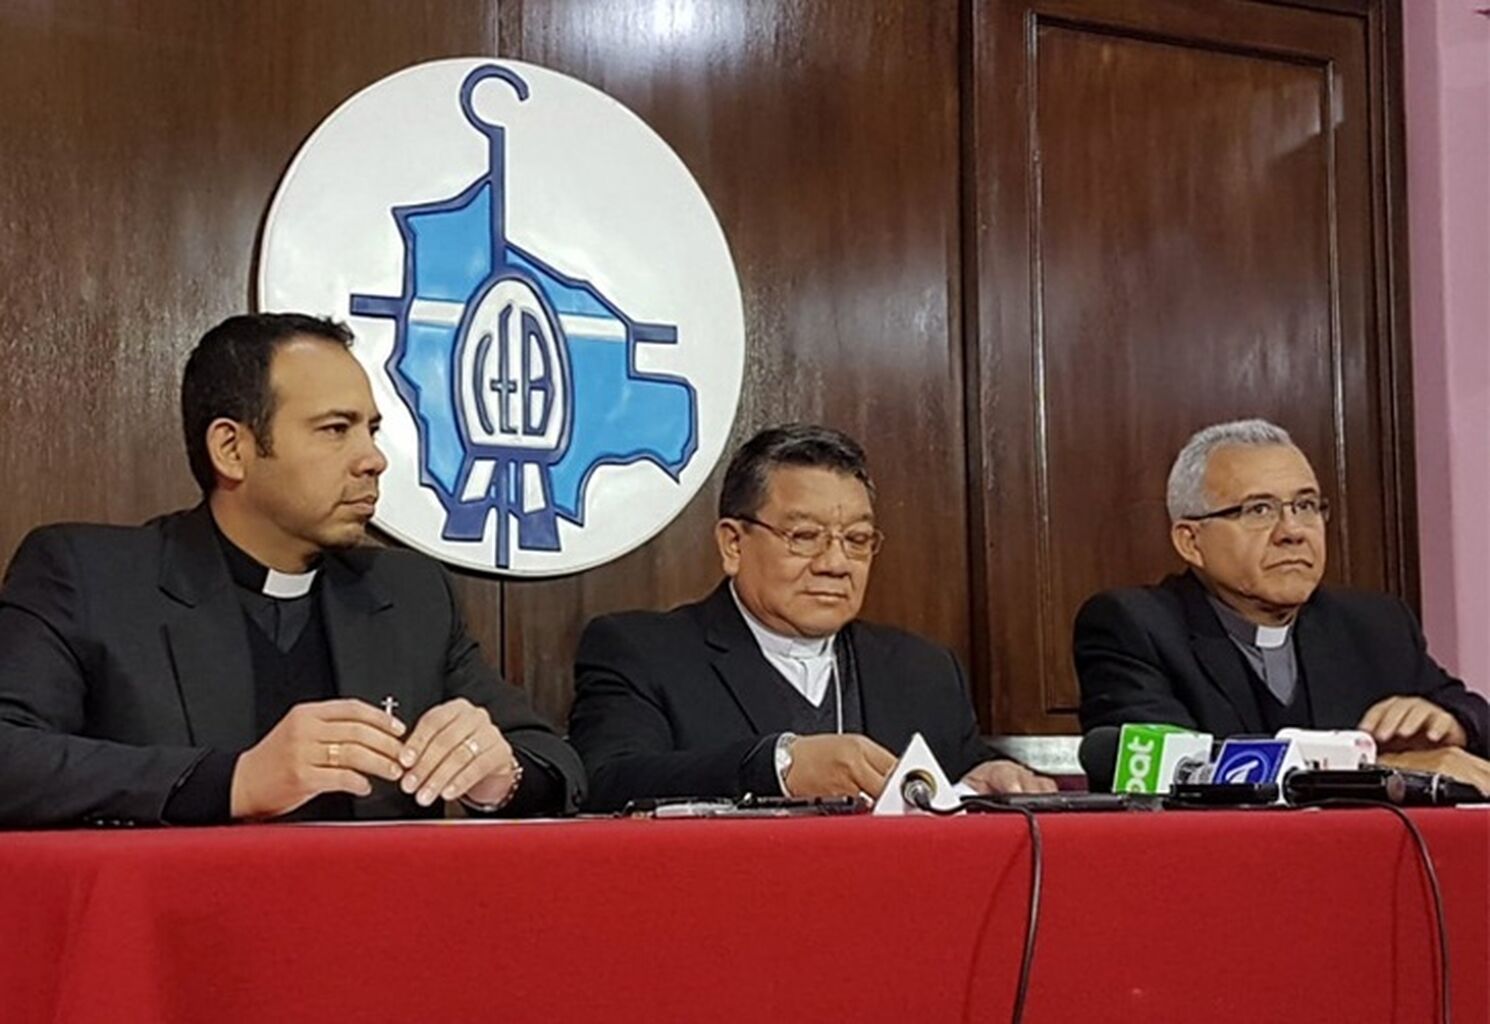 Conferencia Episcopal Boliviana hizo un llamado a la paz